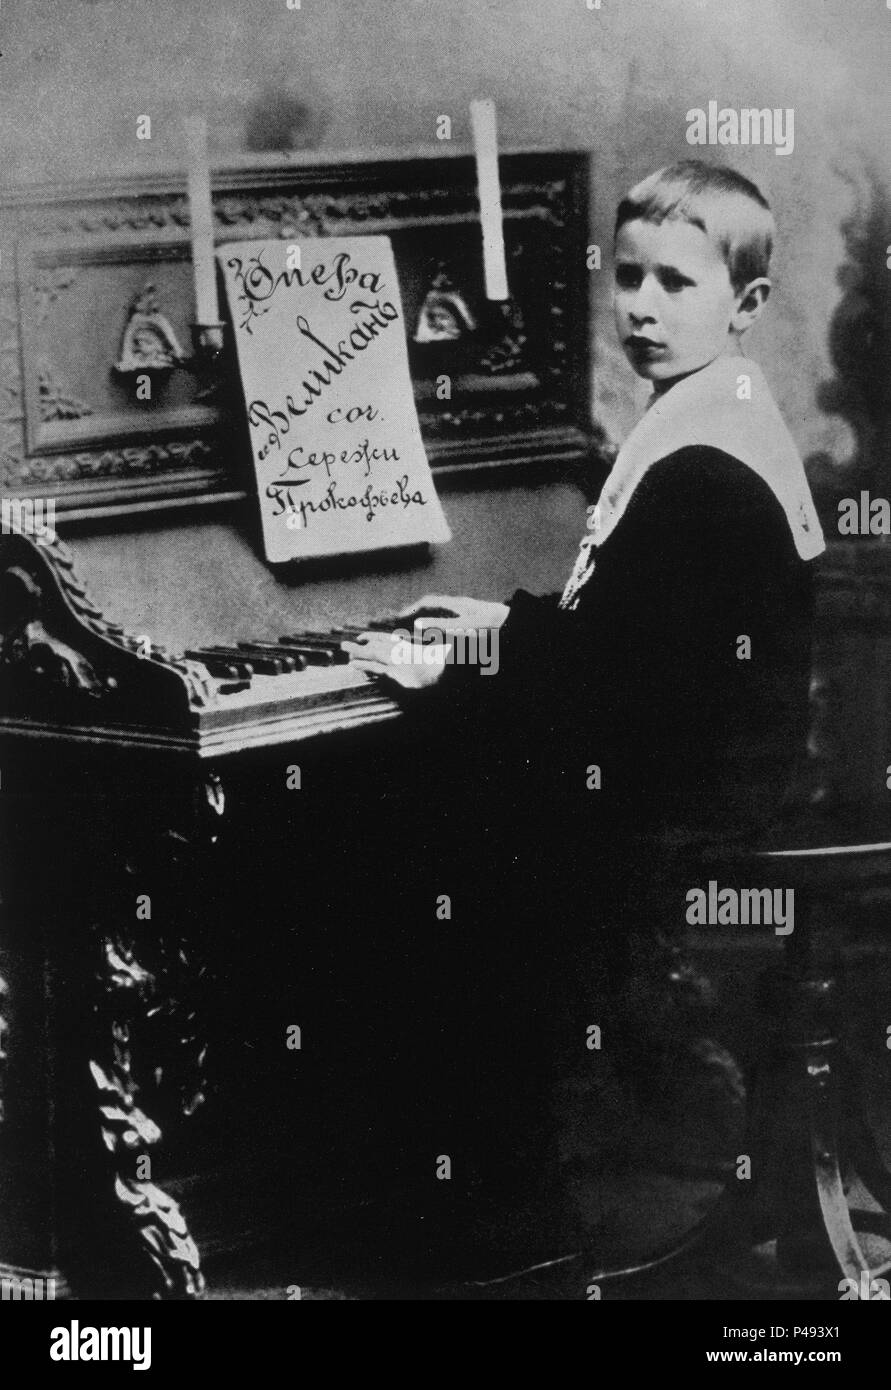 SERGEI PROKOFIEV (1891-1953) COMPOSITOR Y PIANISTA RUSO - FOTO DE 1909. Stock Photo